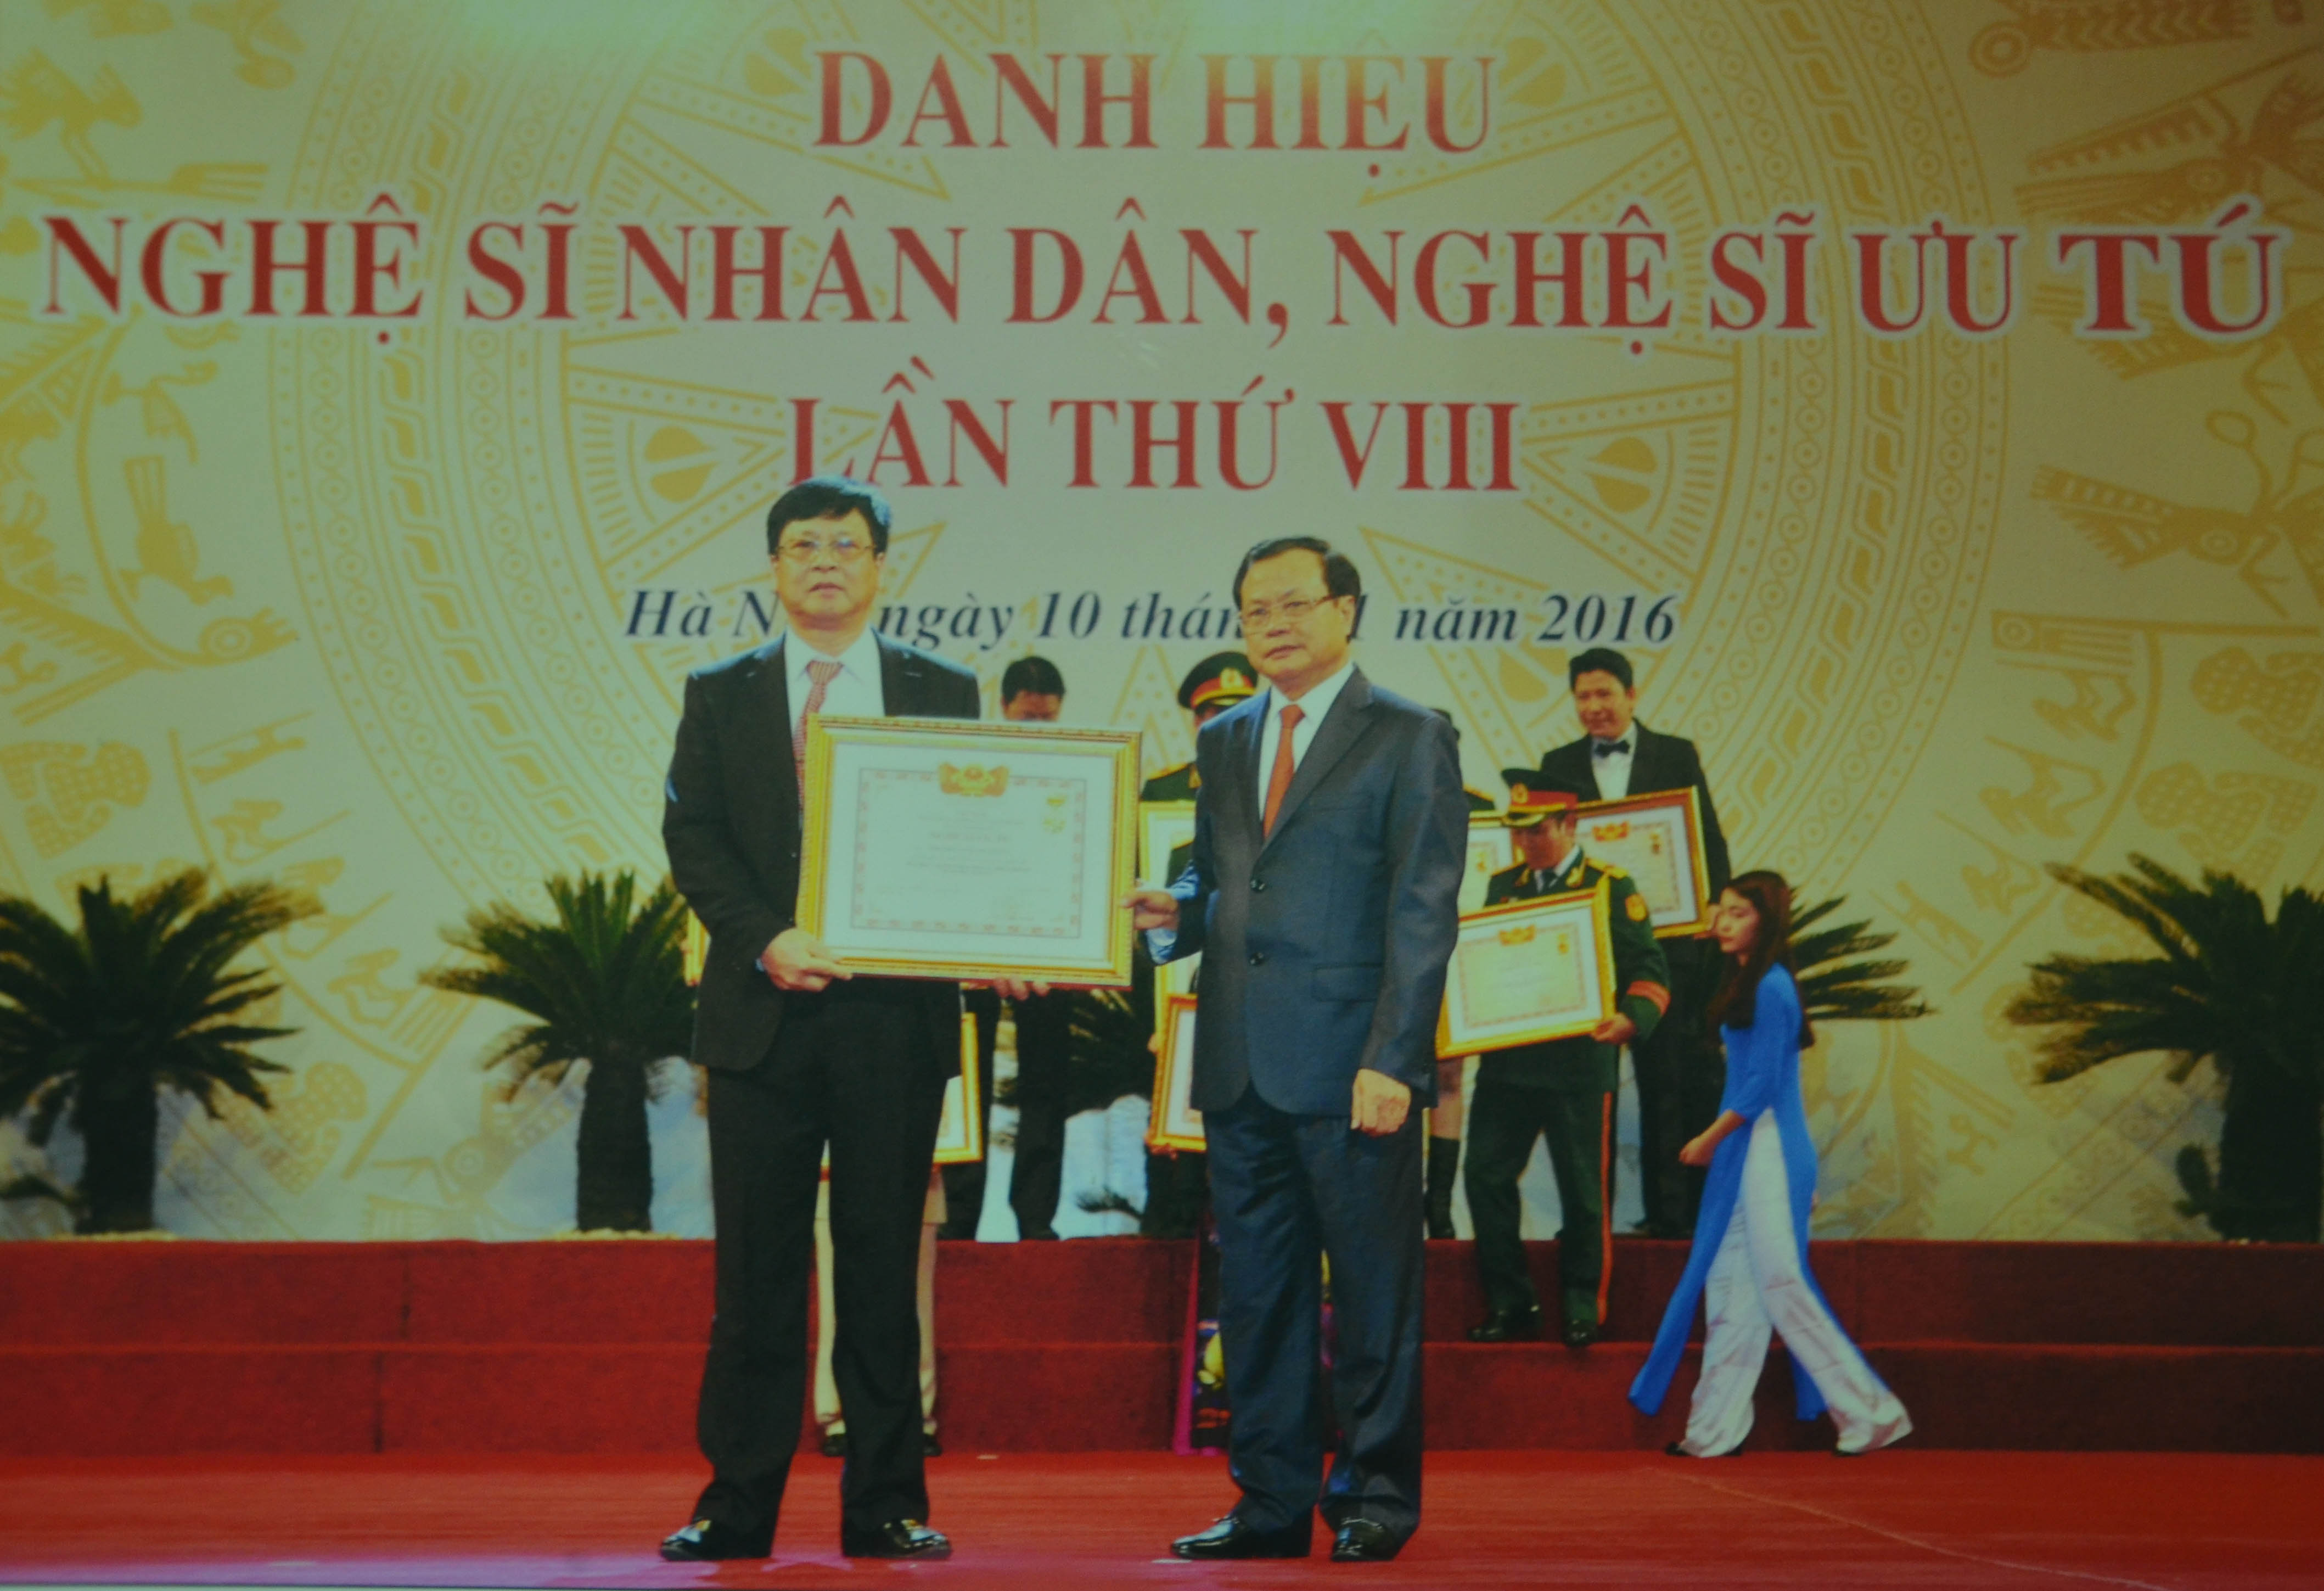 Ông Phạm Hữu Lượng (trái) đón nhận danh hiệu Nghệ sĩ Ưu tú. (Ảnh: Nhân vật cung cấp). 